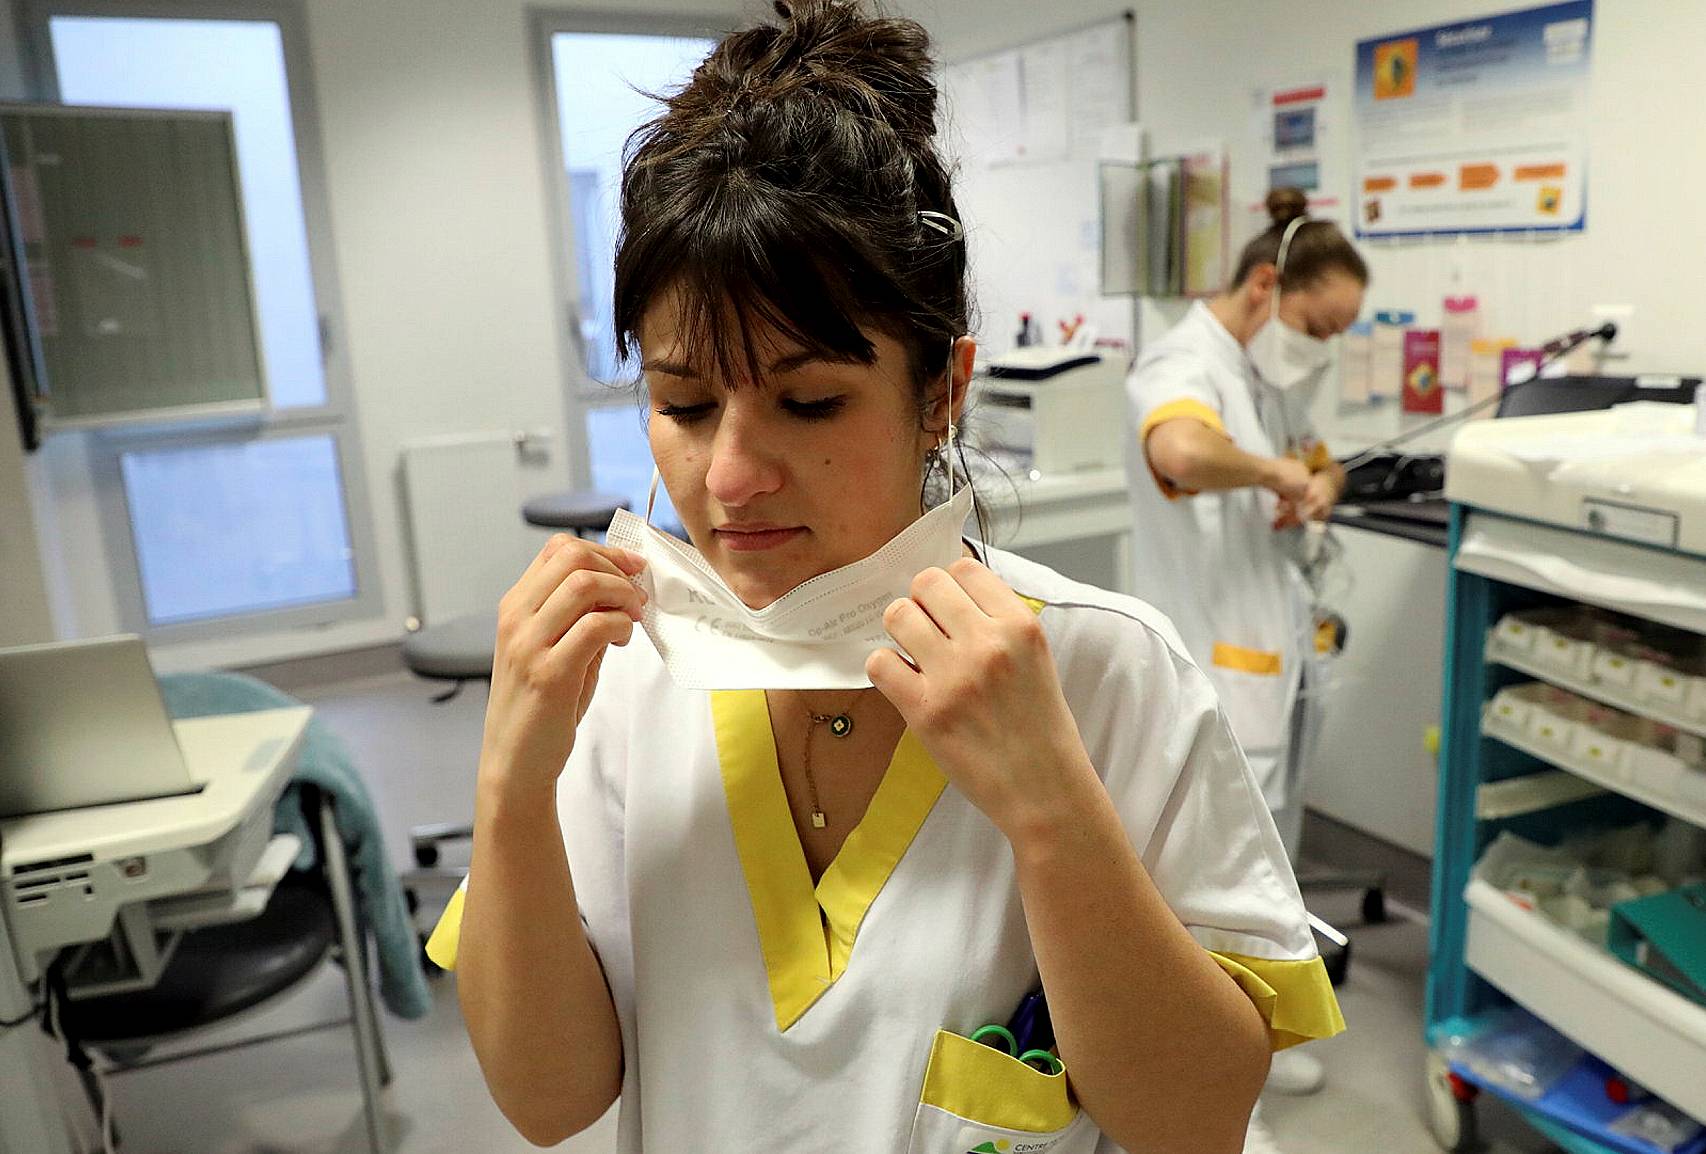 Notre dossier : 40 % des élèves infirmiers tombent la blouse, le grand malaise